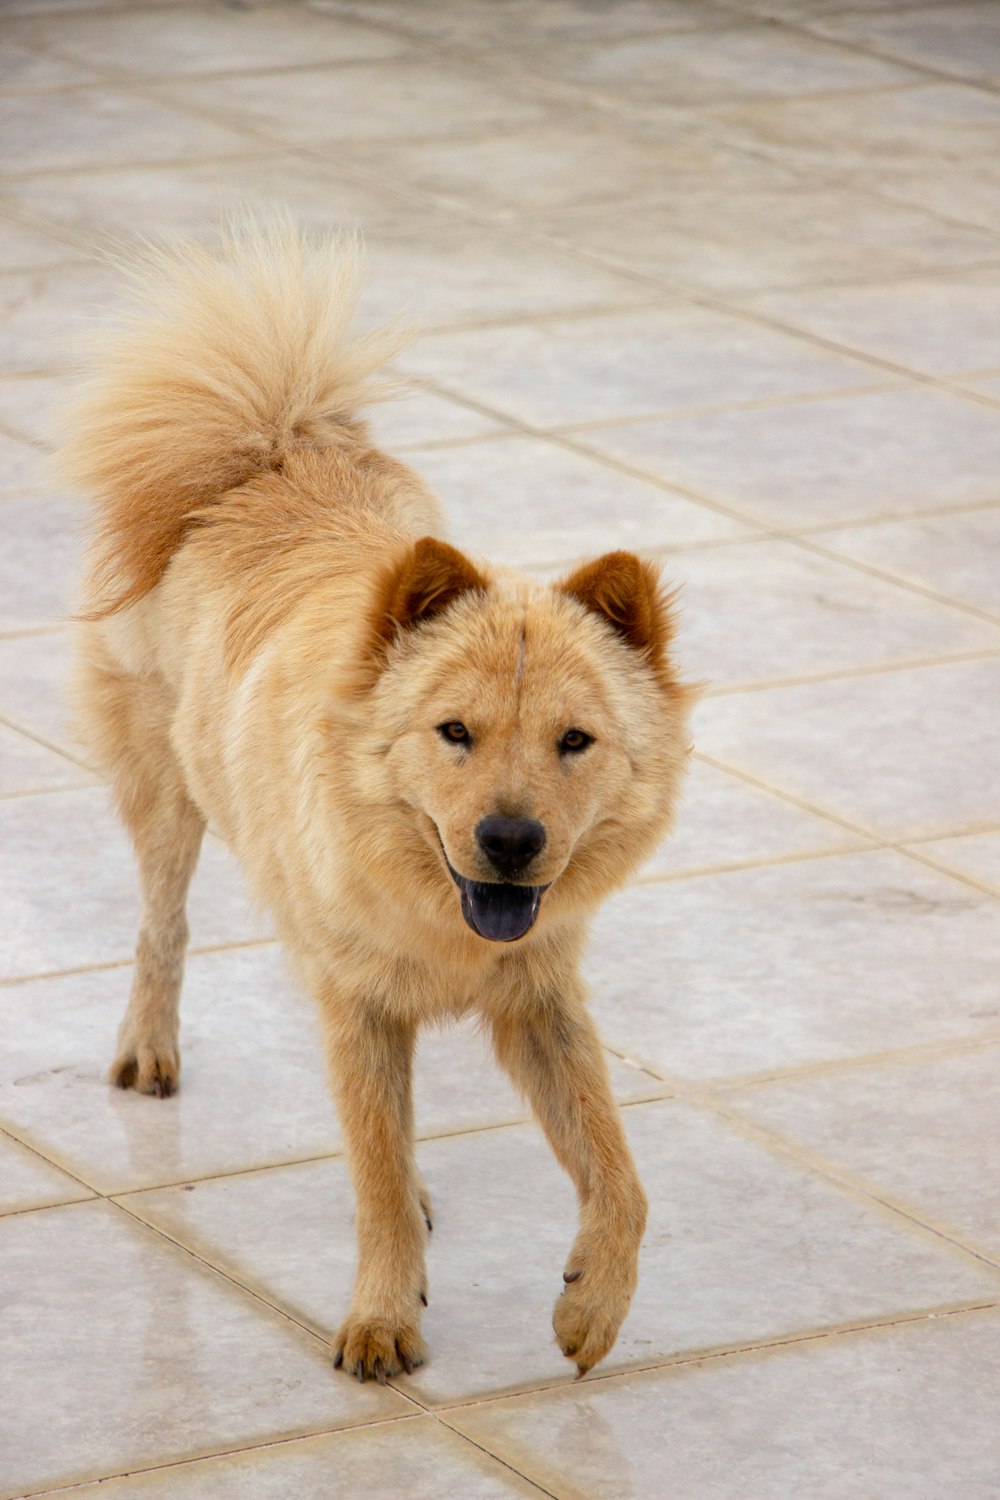 brown long coated dog on white ceramic floor tiles